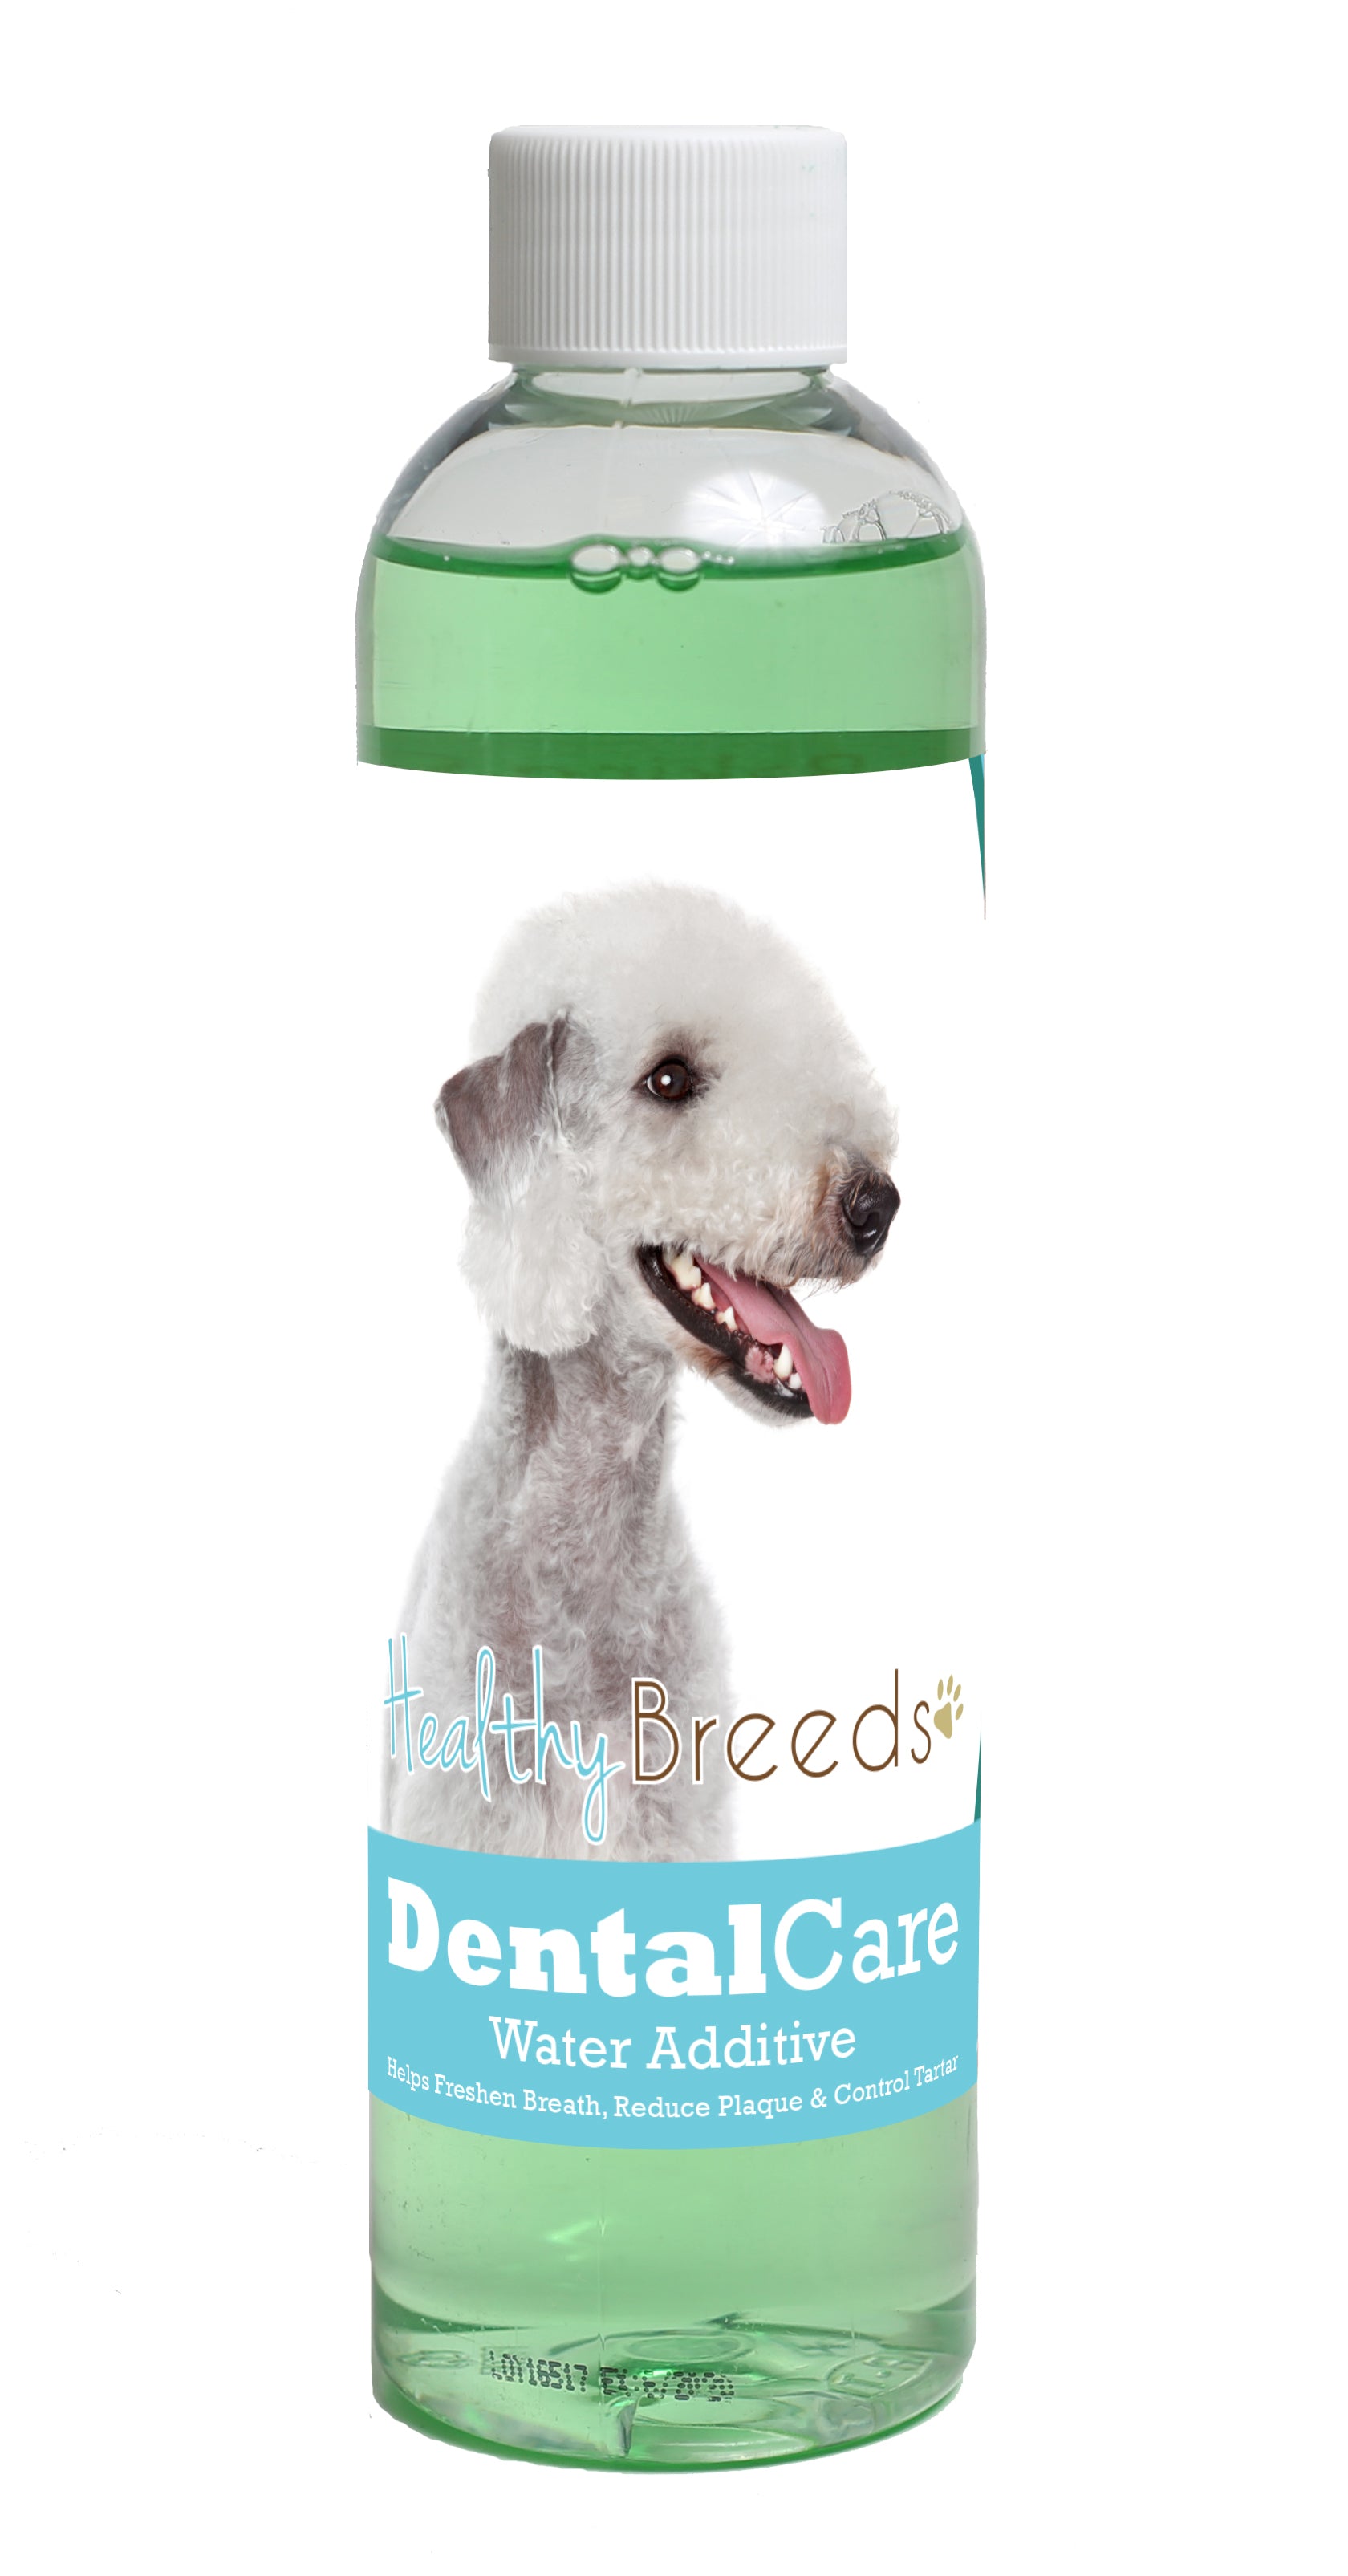 Bedlington Terrier Dental Rinse for Dogs 8 oz